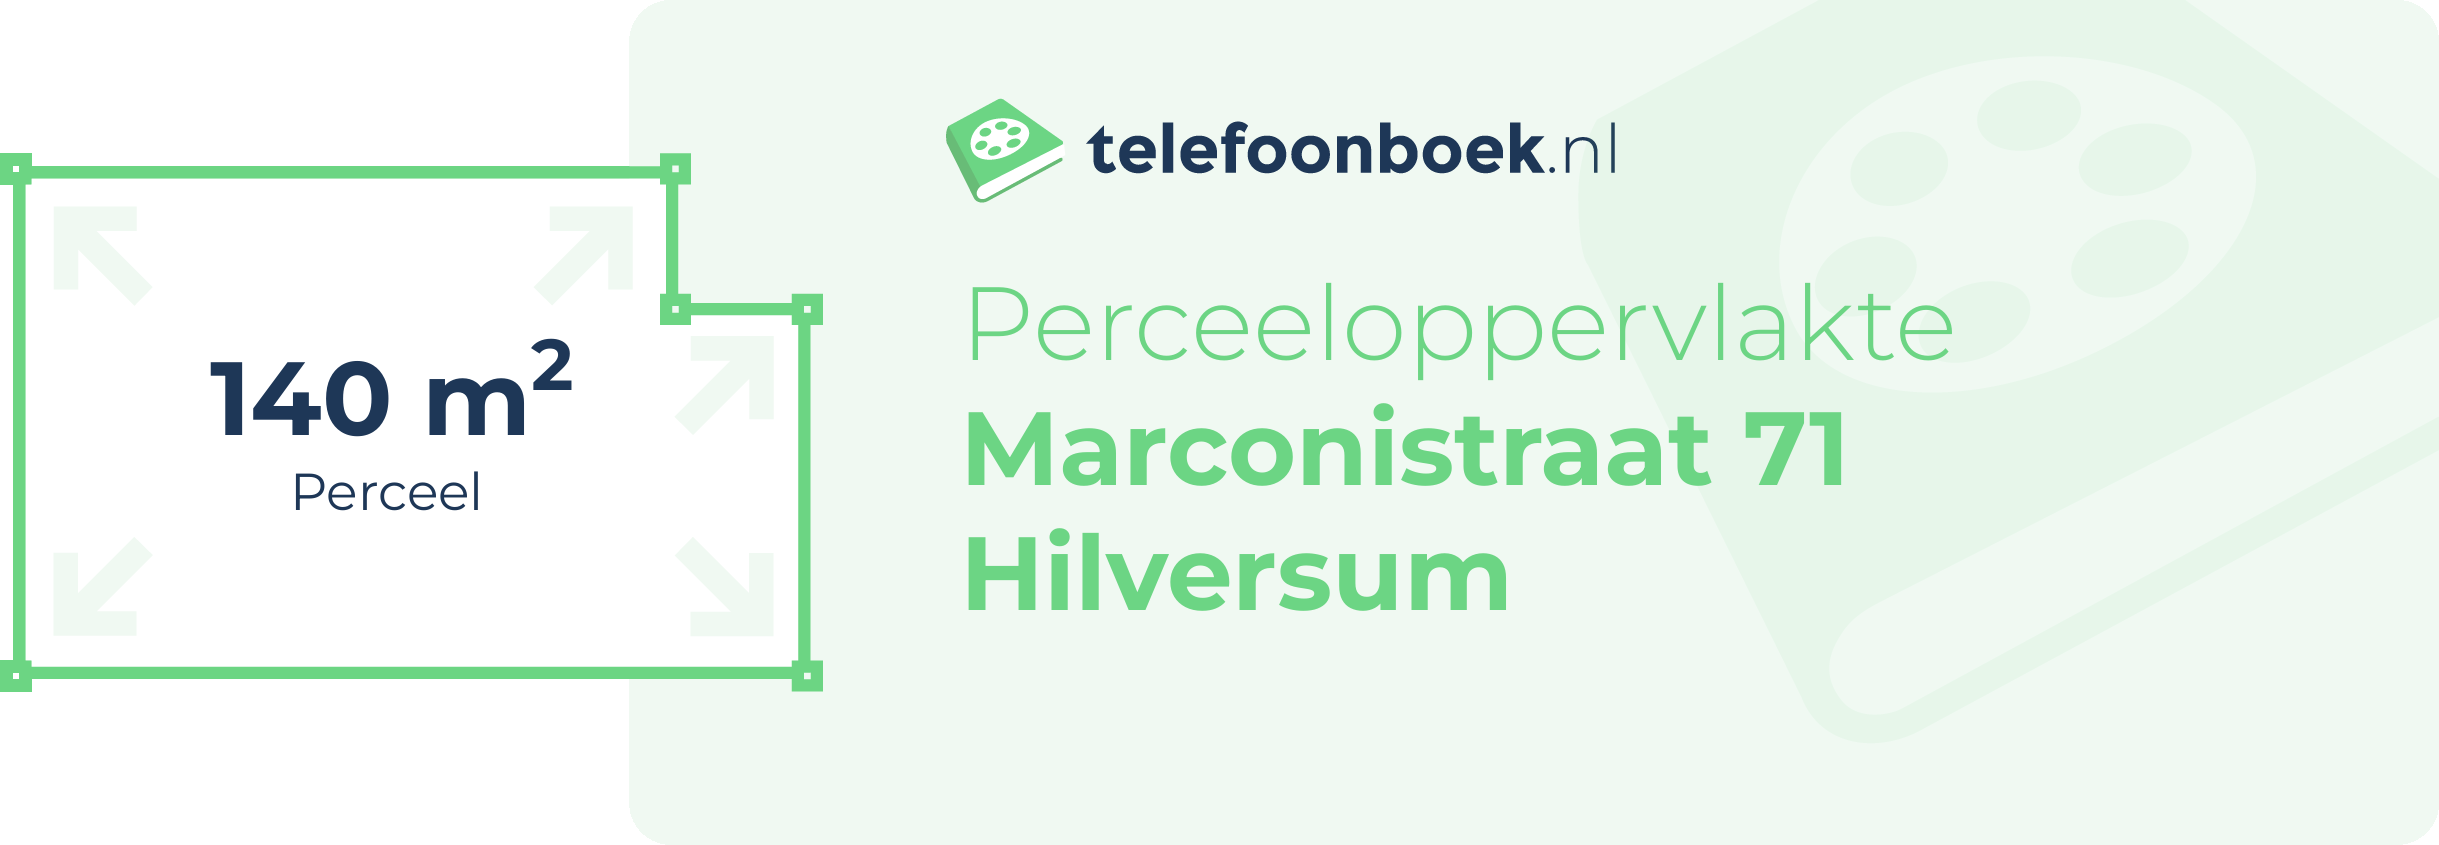 Perceeloppervlakte Marconistraat 71 Hilversum